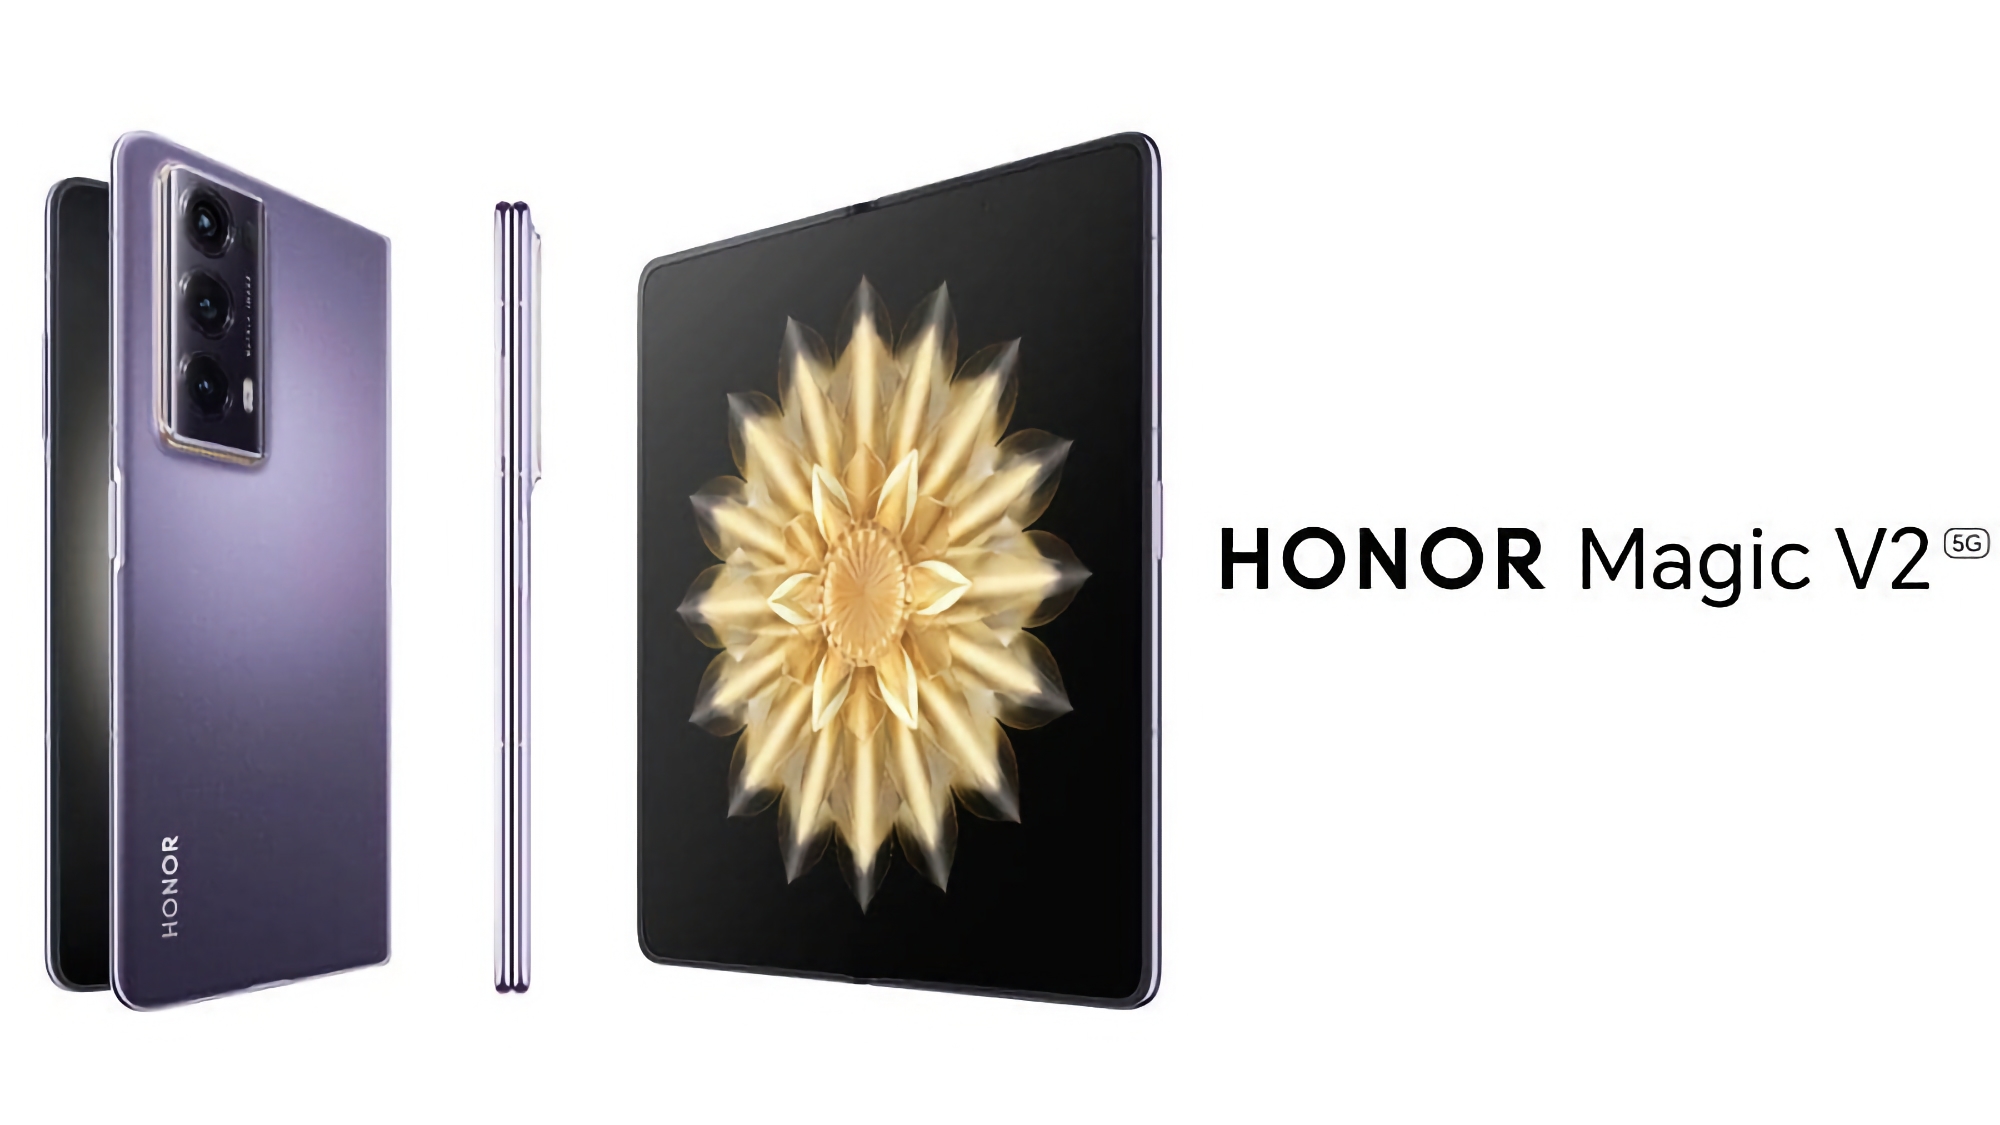 Lo smartphone pieghevole più leggero e sottile del mercato, Honor Magic V2, debutterà in Europa il 26 gennaio.